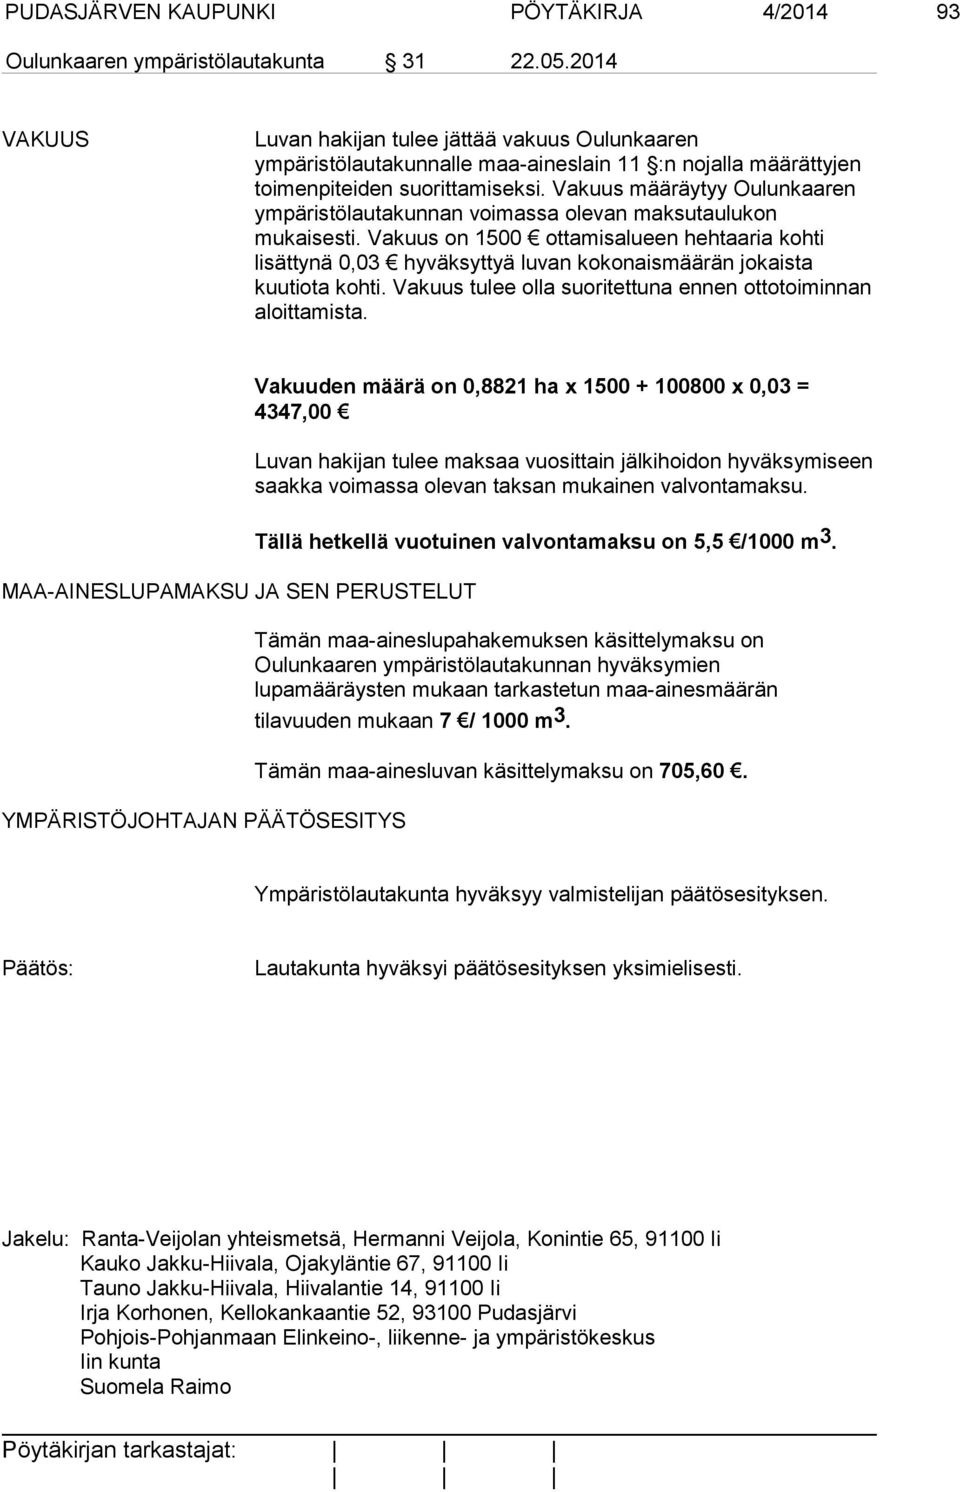 Vakuus määräytyy Oulunkaaren ympäristölautakunnan voimassa olevan maksutaulukon mukaisesti.